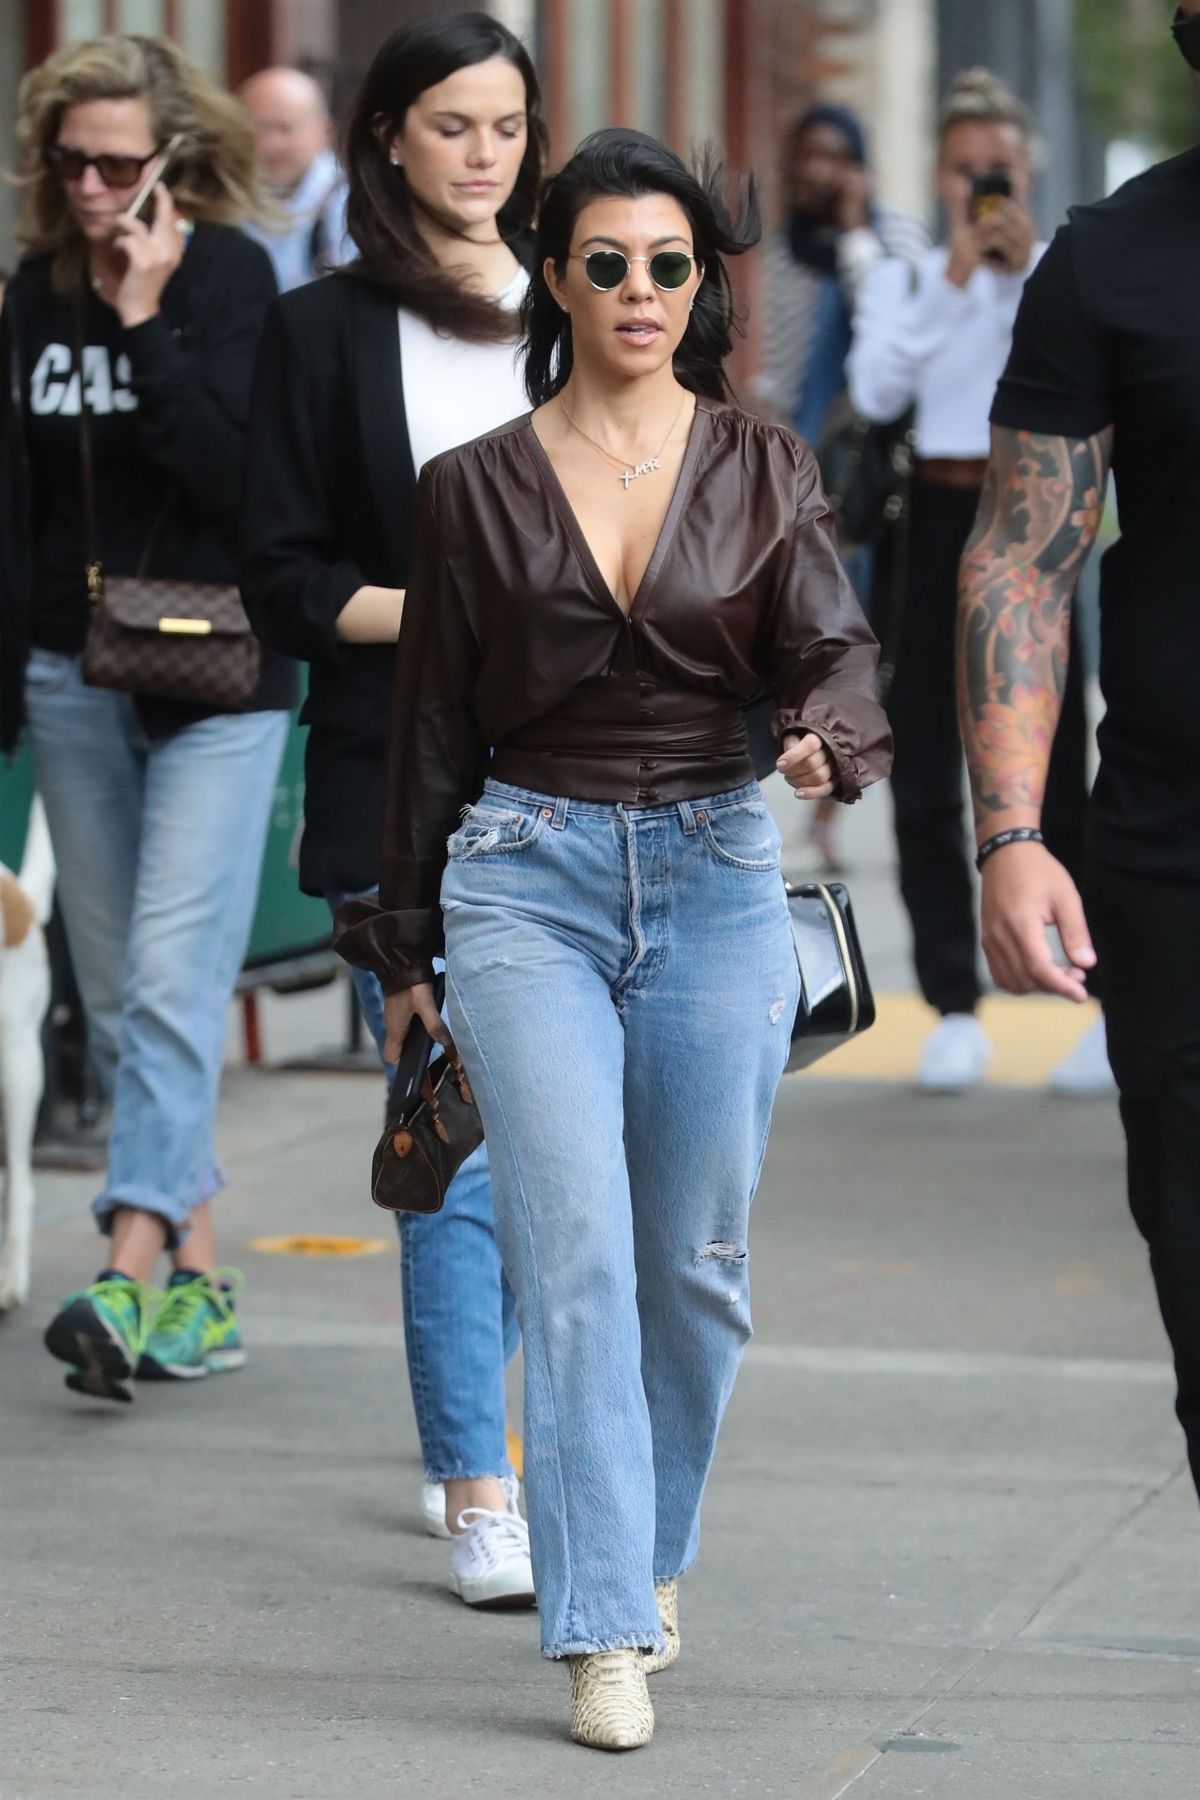 KOURTNEY KARDASHIAN in Jeans Out in New York 06/06/2018 – HawtCelebs